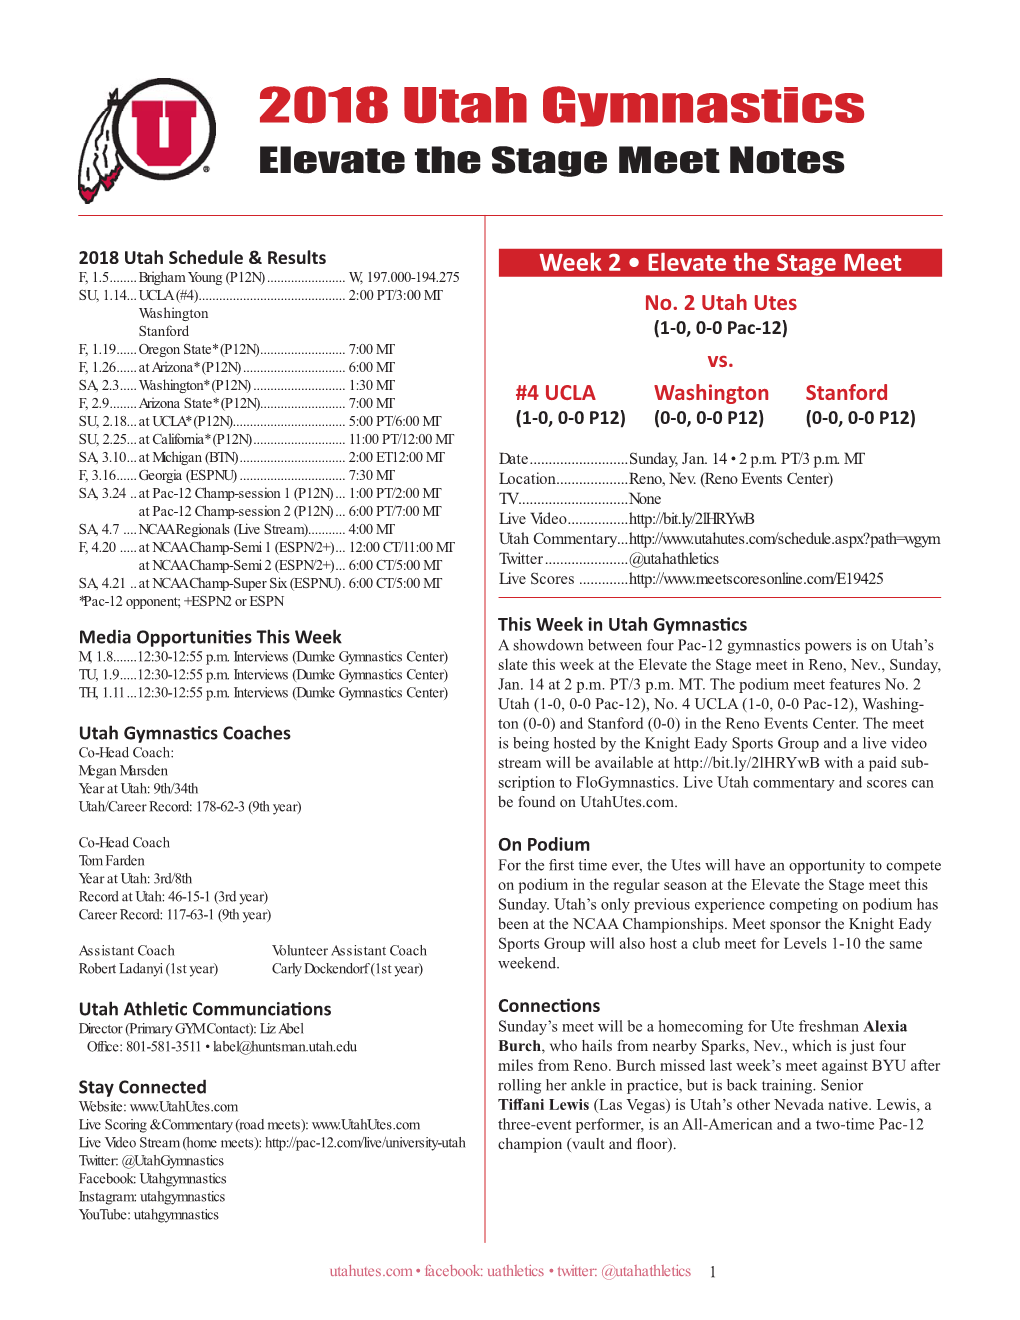 2018 Utah Gymnastics Elevate the Stage Meet Notes